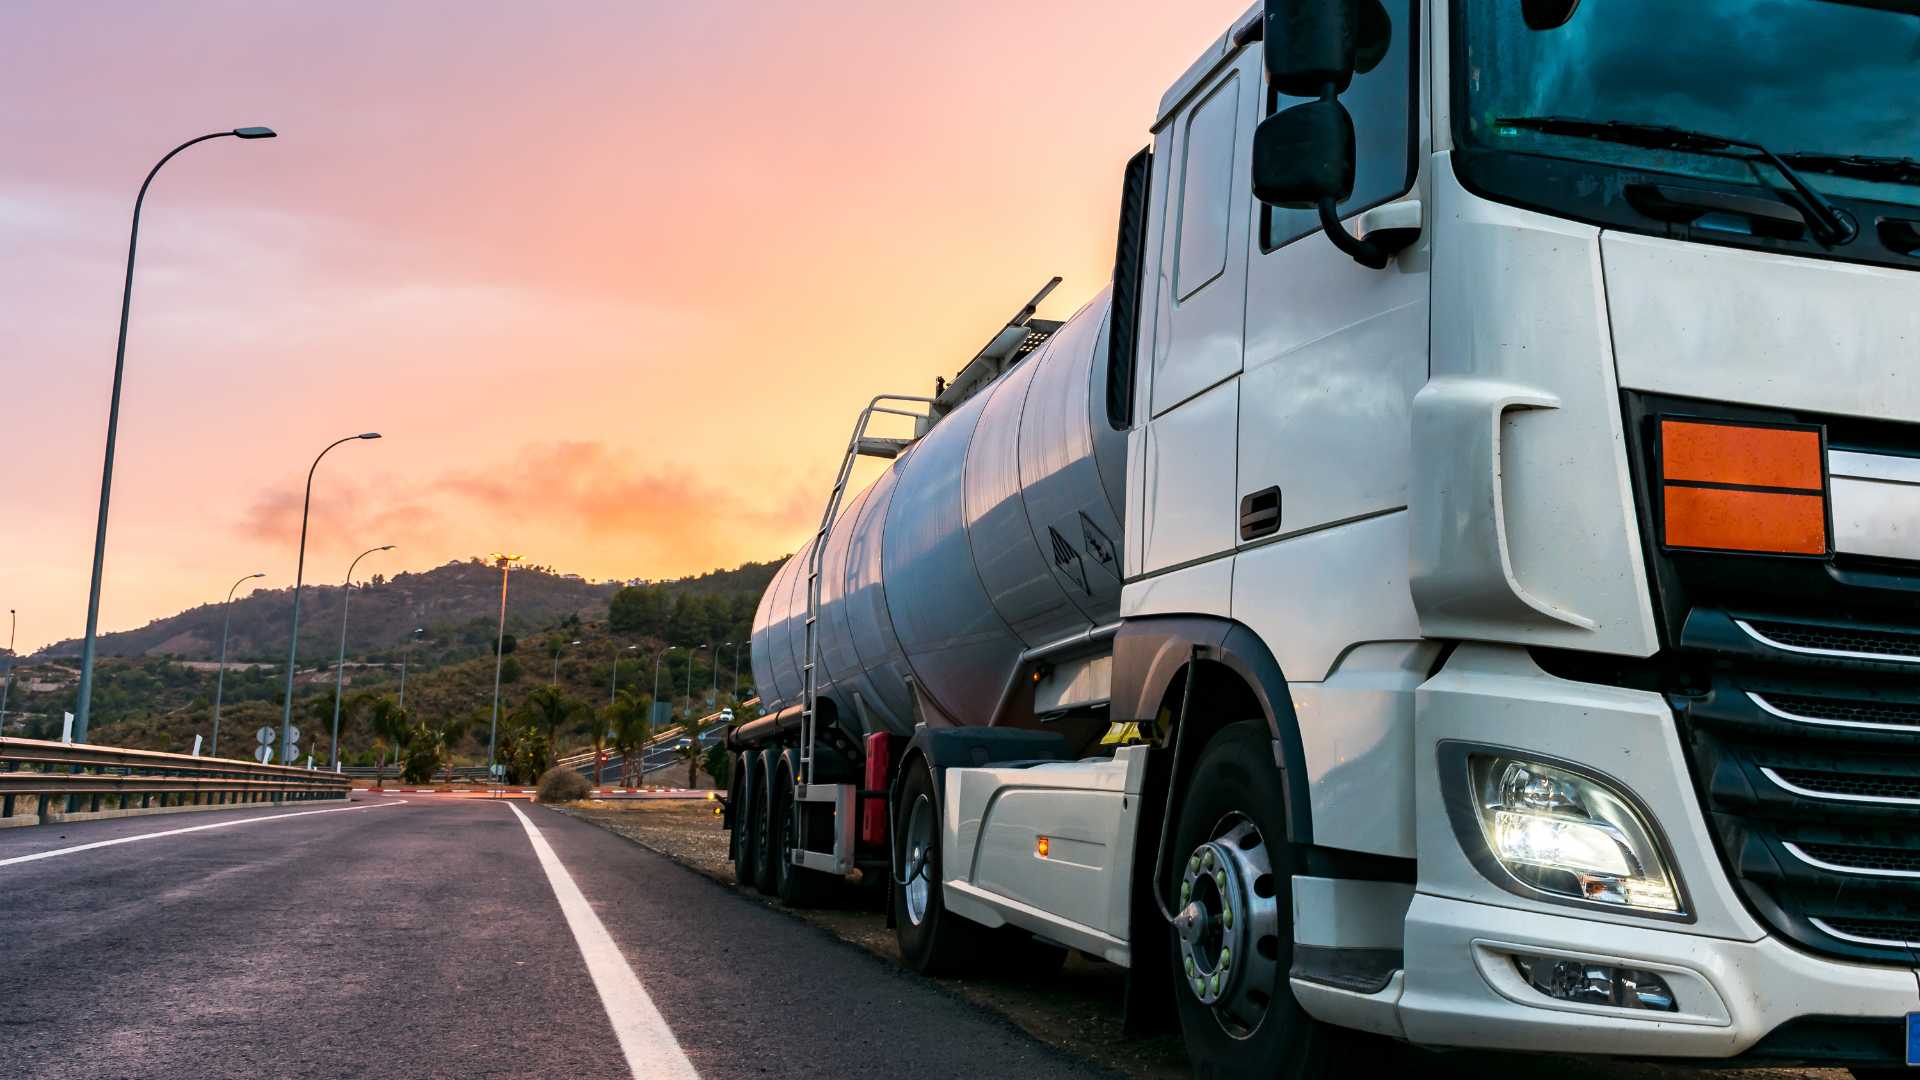 Camion su strada che trasporta merci pericolose al tramonto